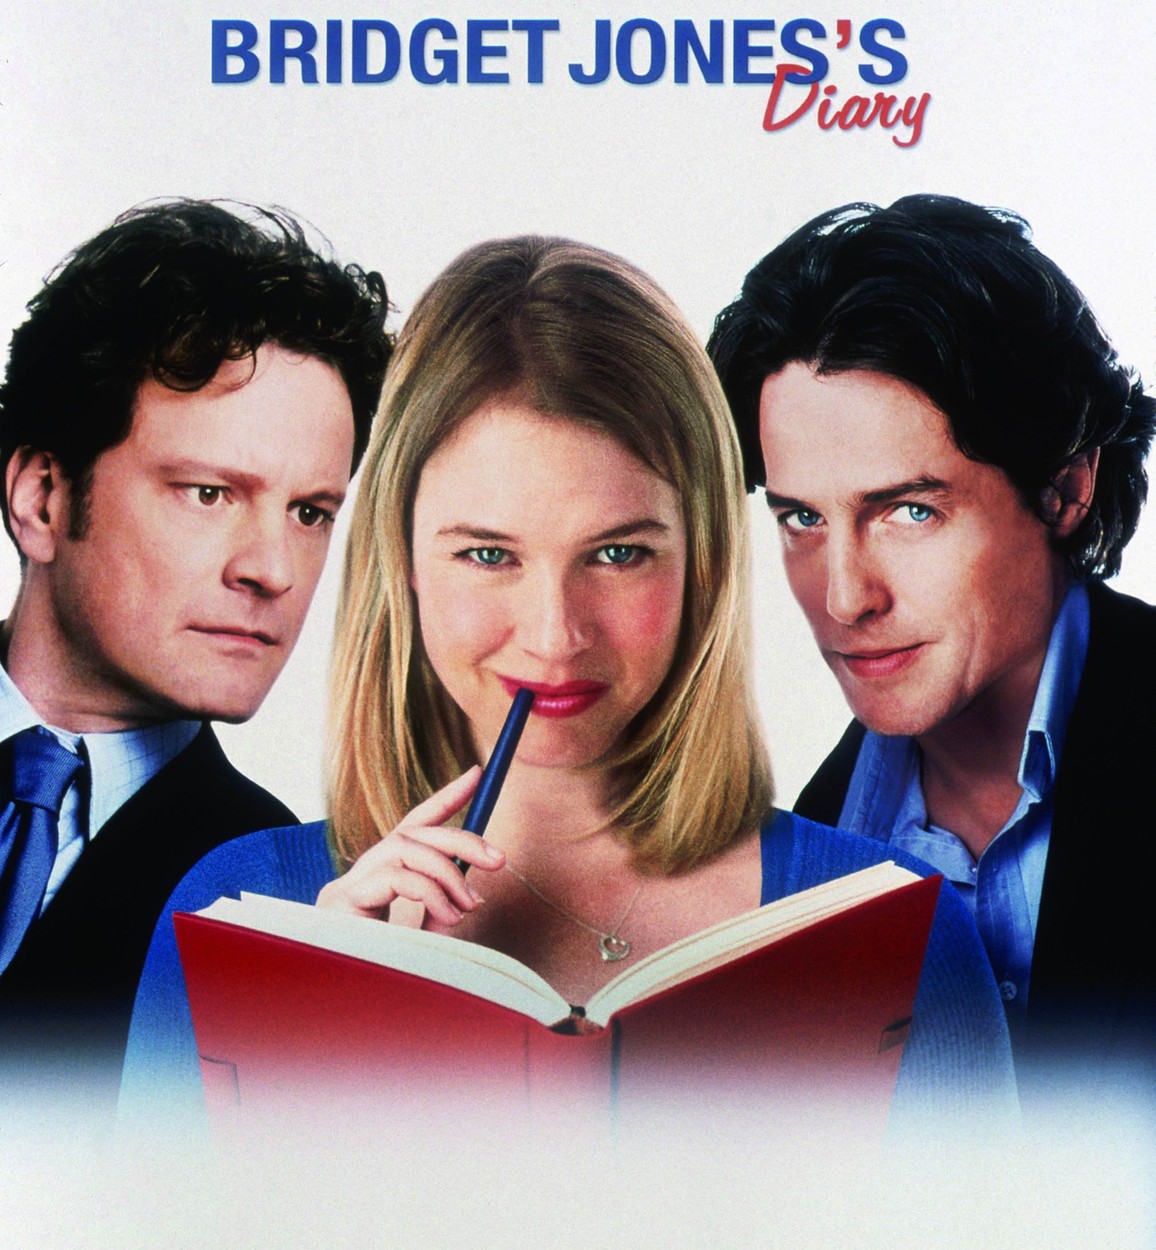 Bridget Jones naplója